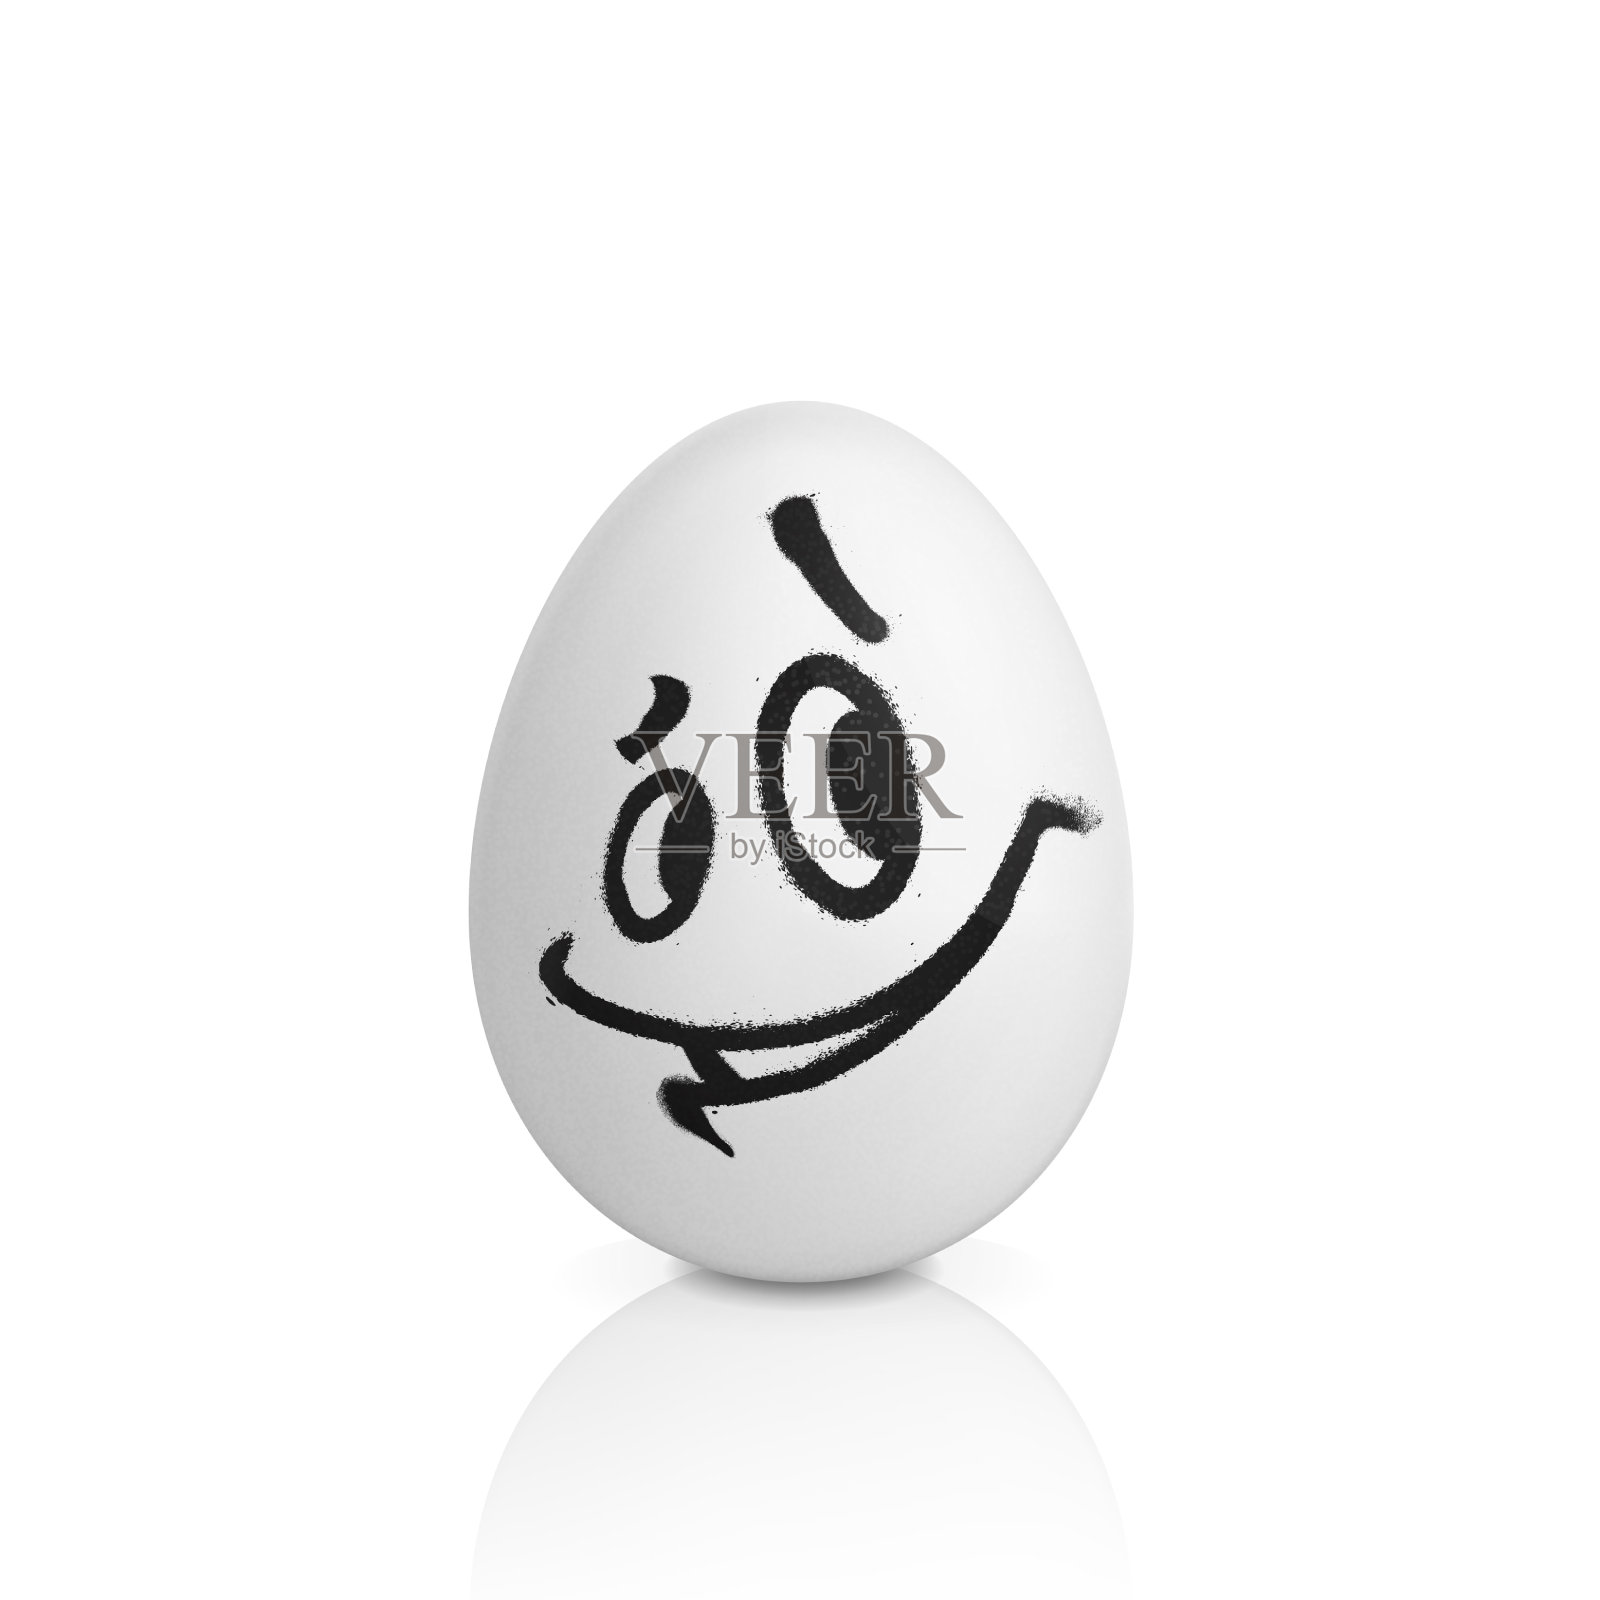 拿着鸡蛋的微笑的面孔的英俊的白肤金发的人在演播室 库存图片. 图片 包括有 鸡蛋, 陈列, 微笑, 年轻 - 96617181